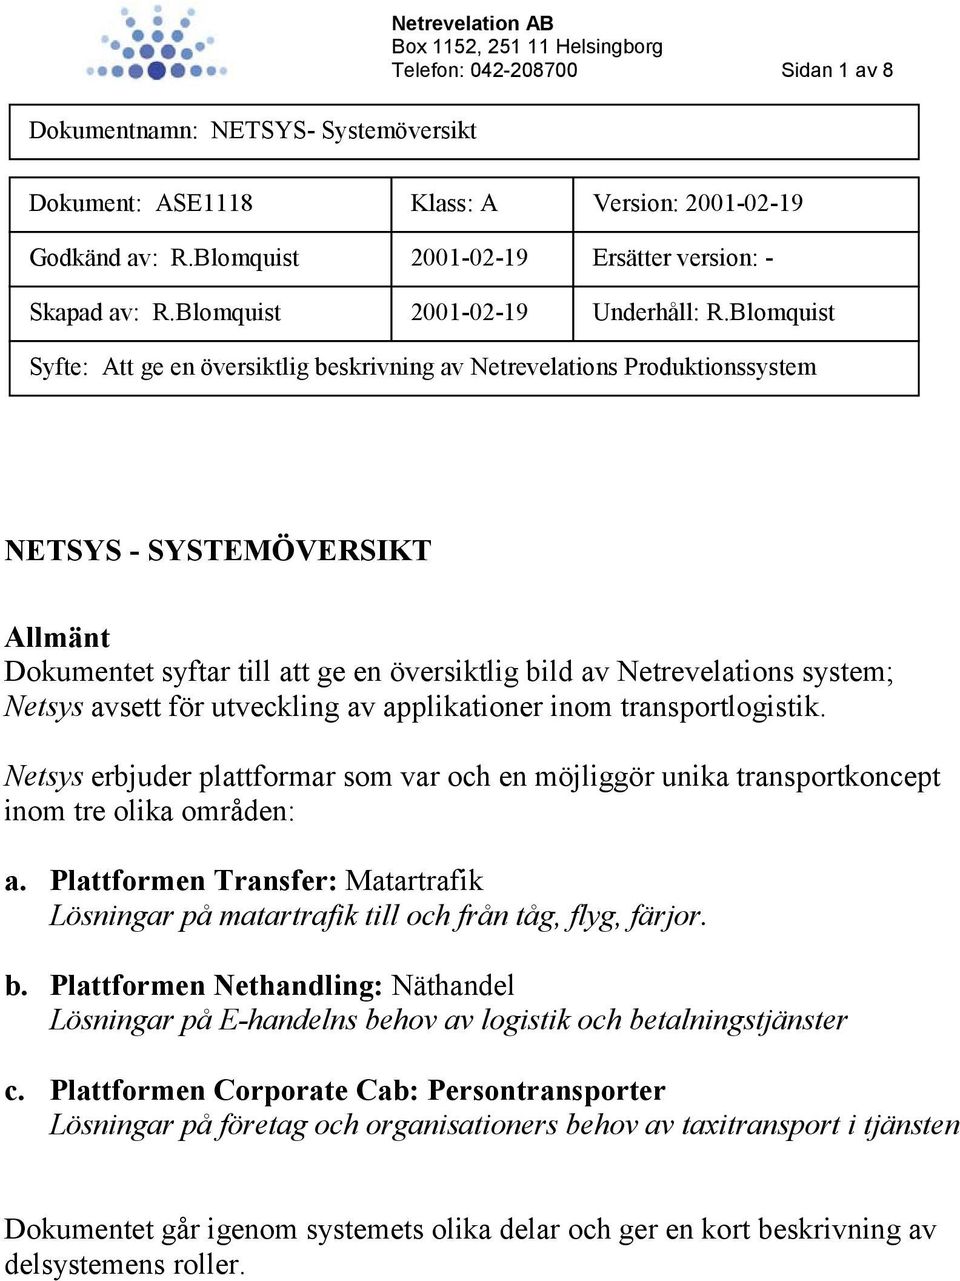 Netsys avsett för utveckling av applikationer inom transportlogistik. Netsys erbjuder plattformar som var och en möjliggör unika transportkoncept inom tre olika områden: a.